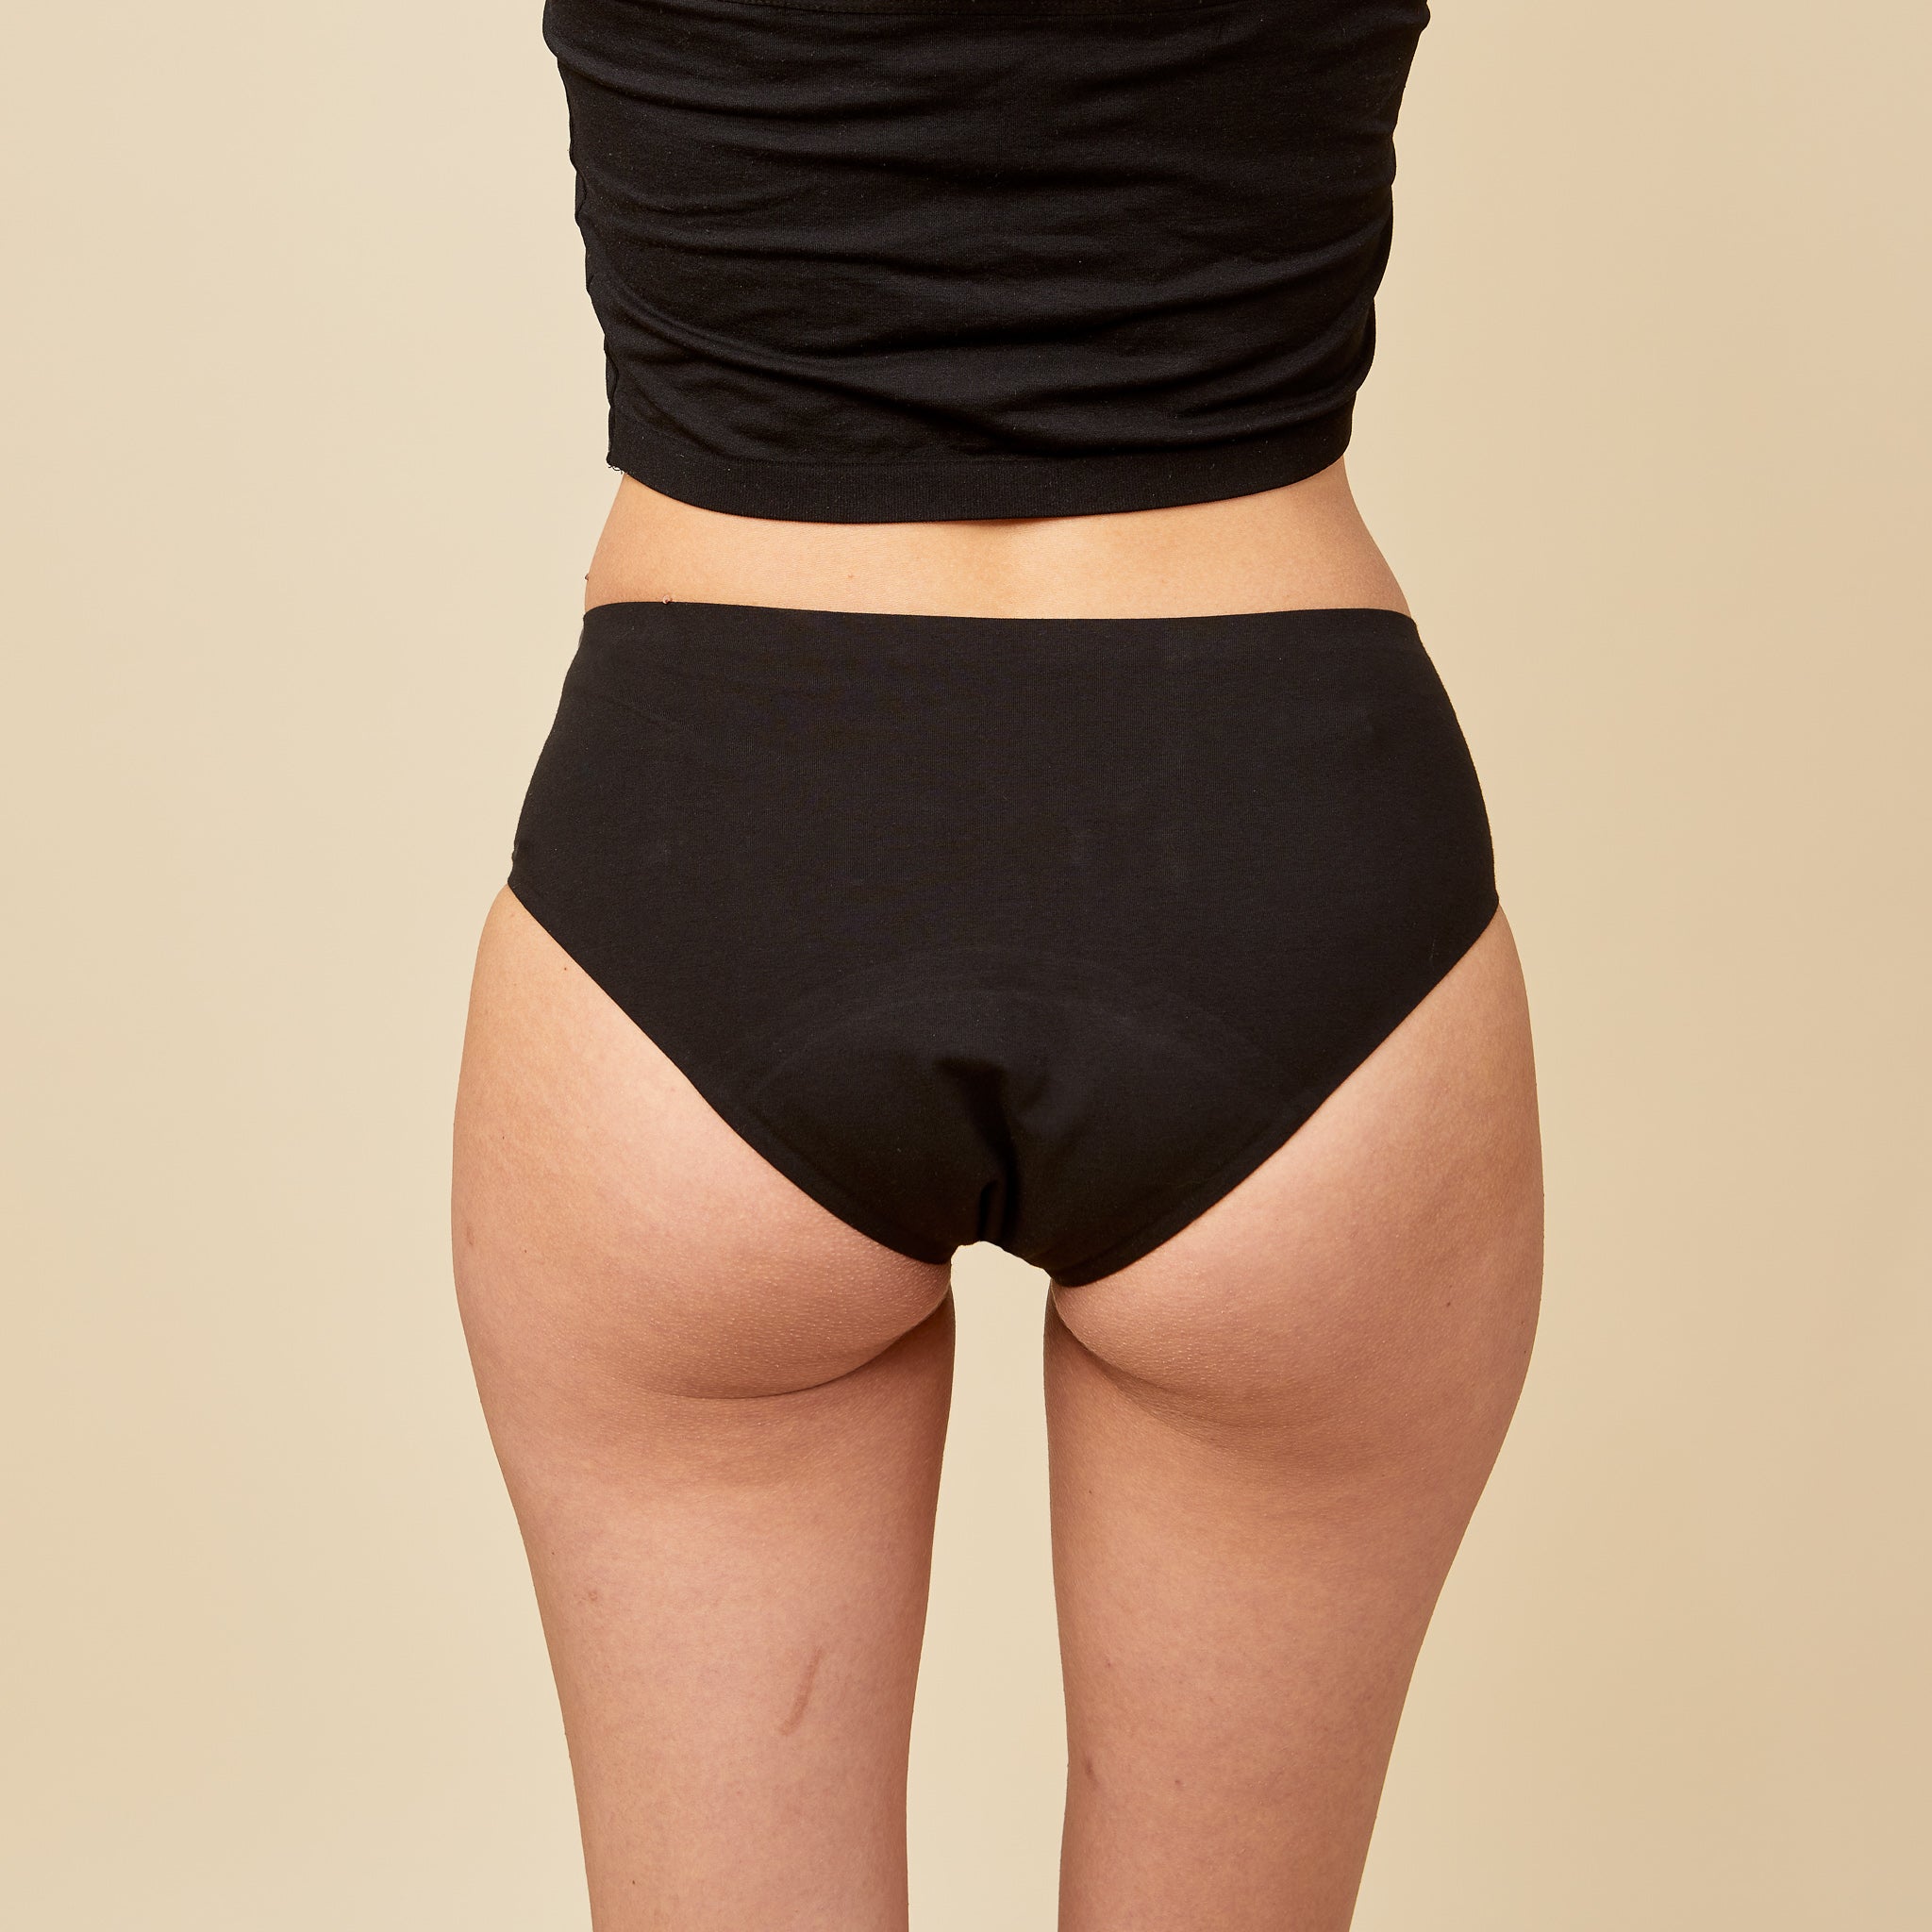 Cheeky Period Underwear (Black)